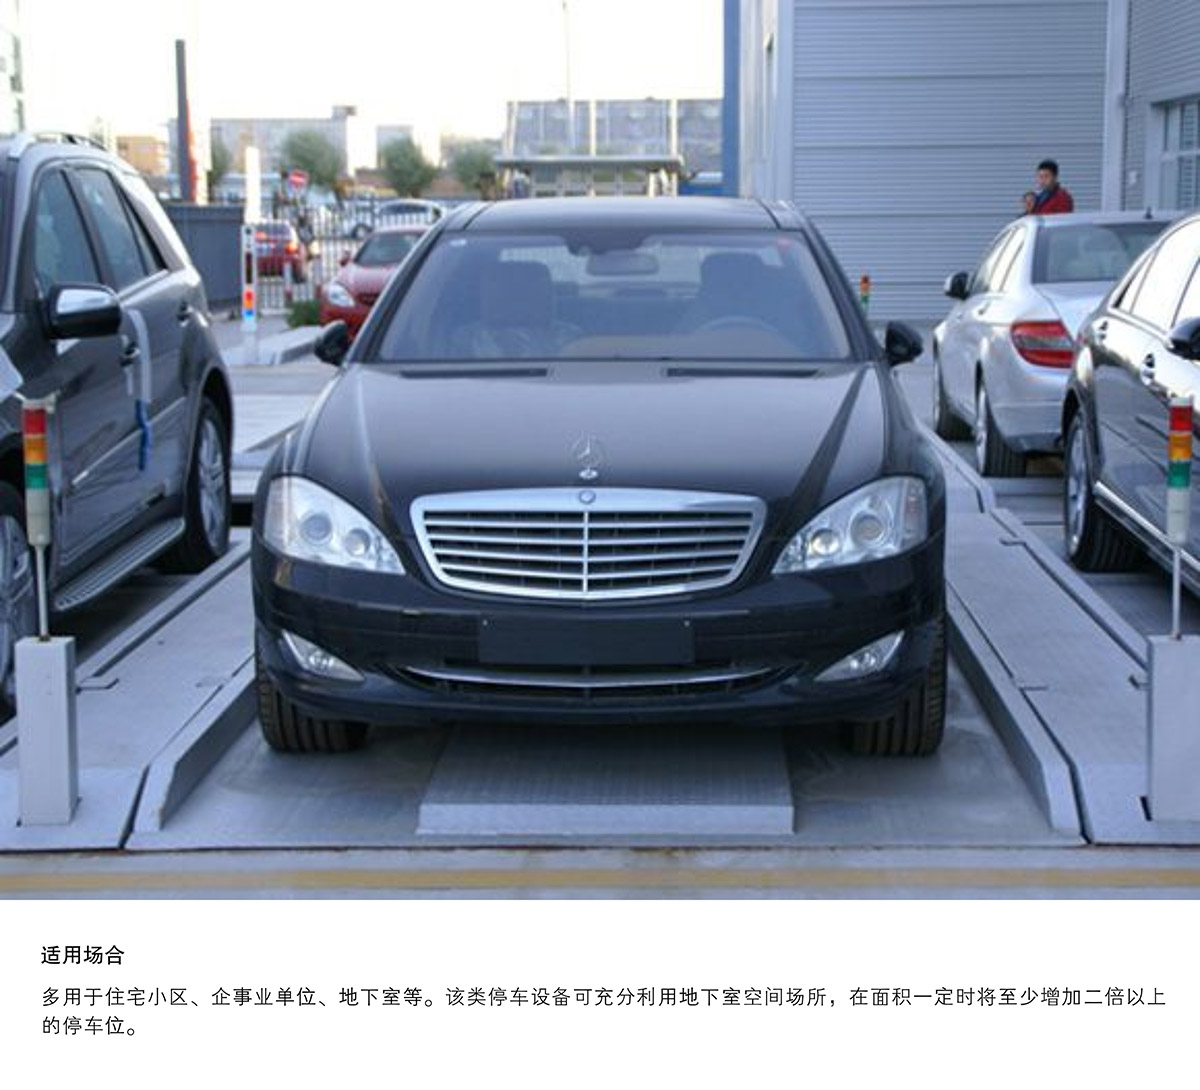 重庆PJS2D1二层地坑简易升降停车设备适用场合.jpg